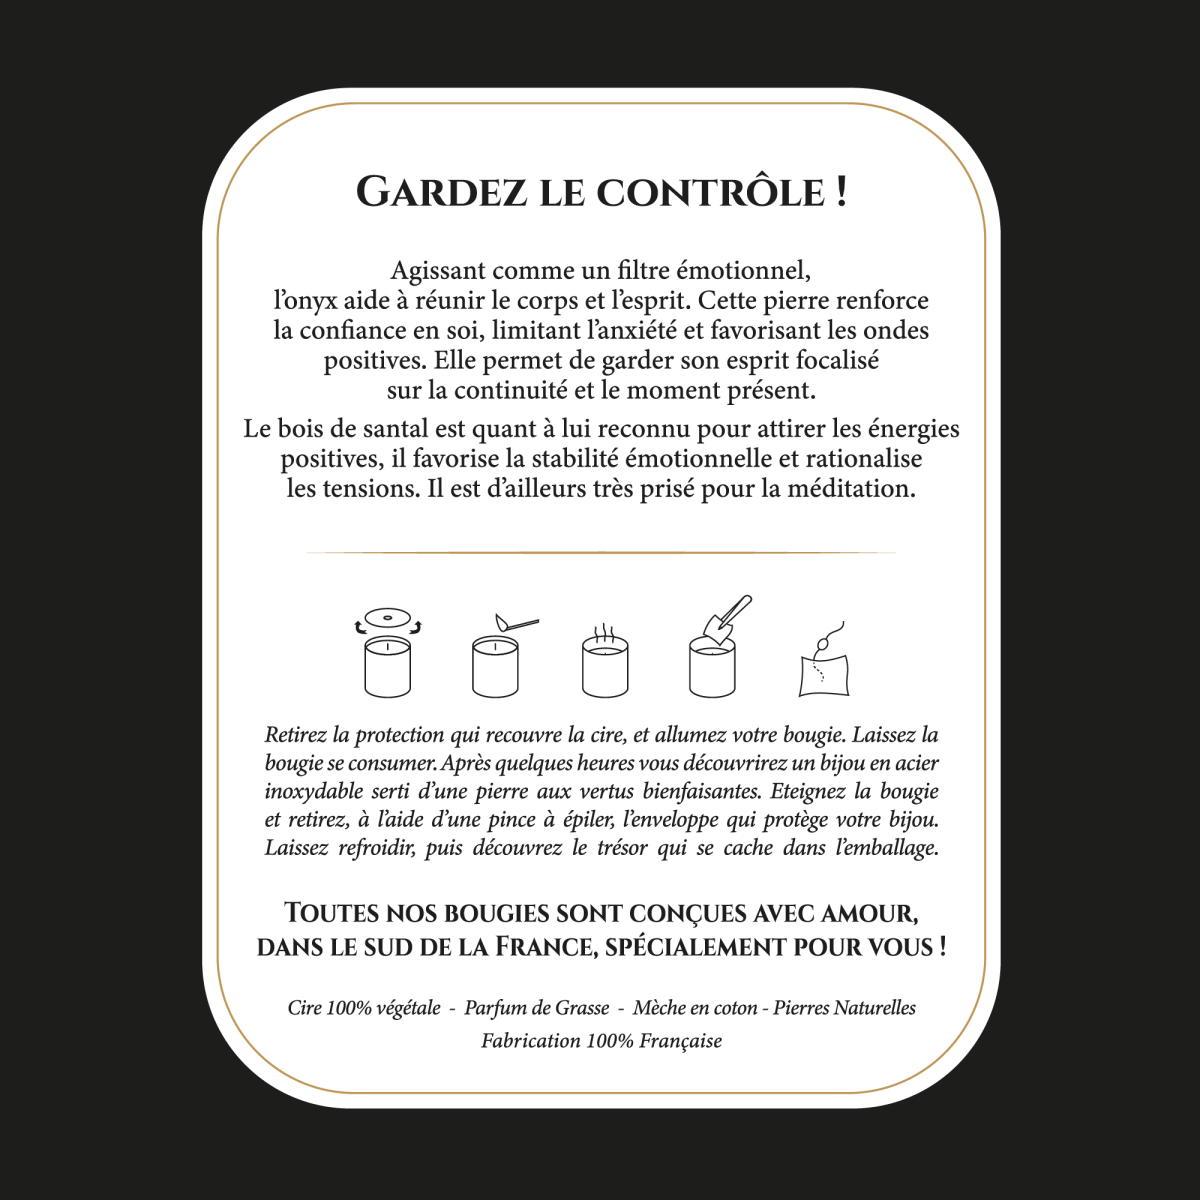 Self Control - Bougie Fragrance Bois De Santal et Bracelet Doré Onyx